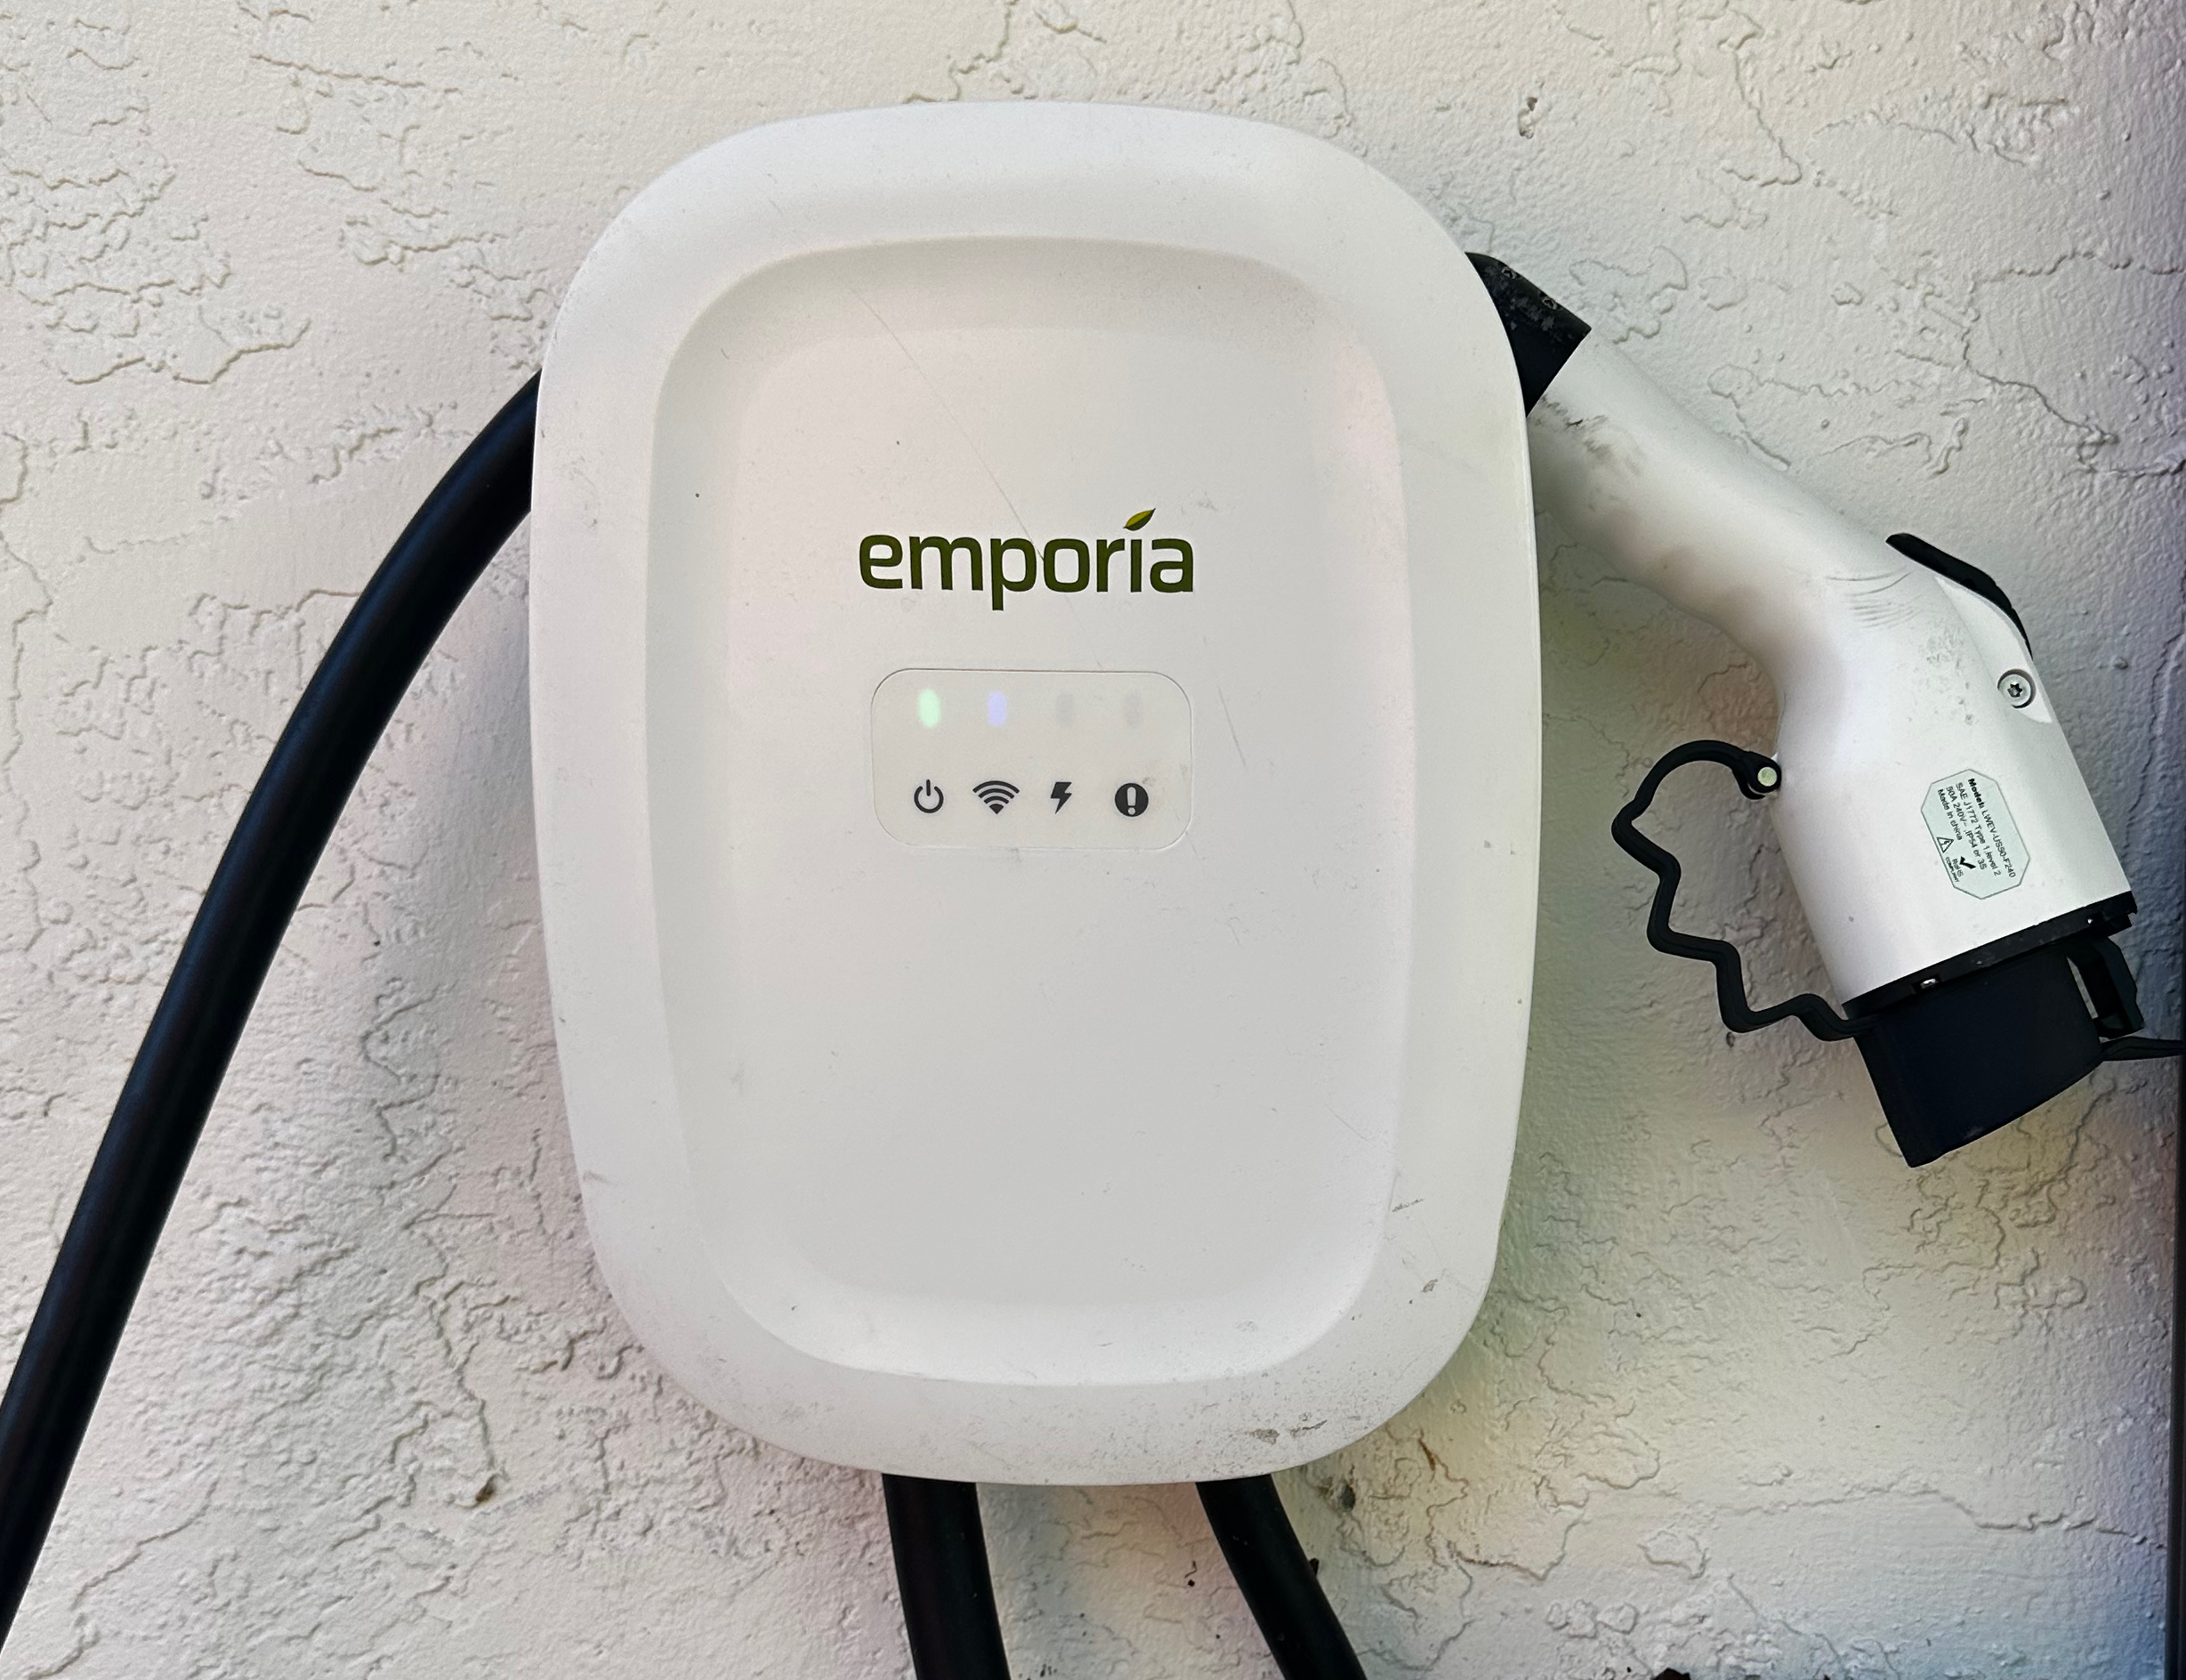 Emporia smart plug review: Power management on a budget